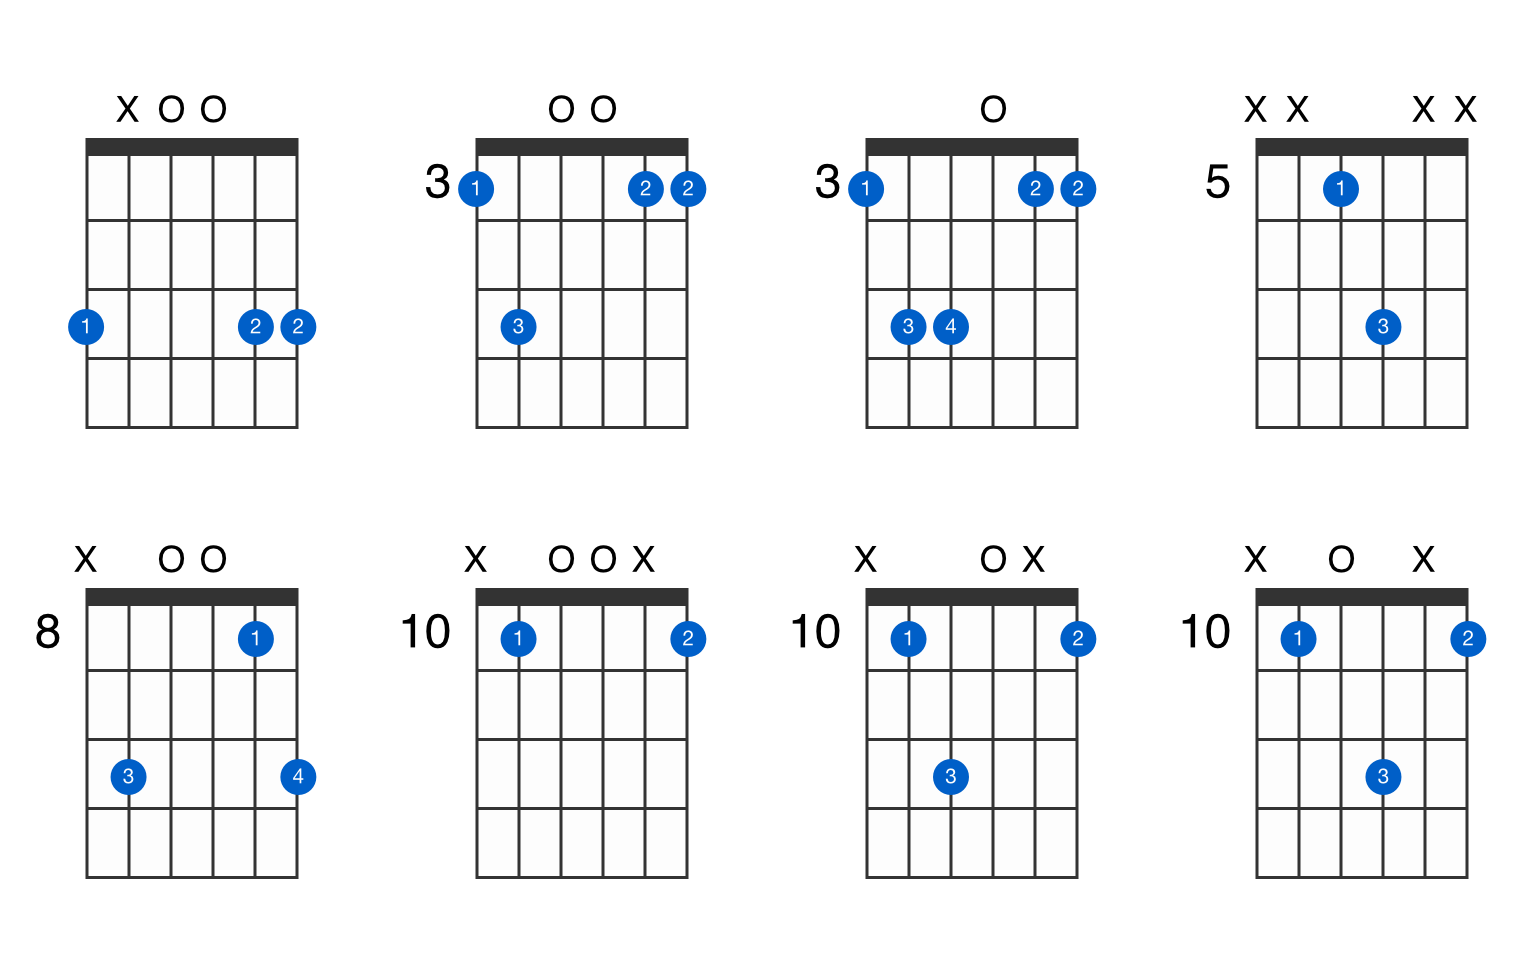 Alle ein Experiment durchführen akzeptieren akord g5 gitara Lebenszeit .